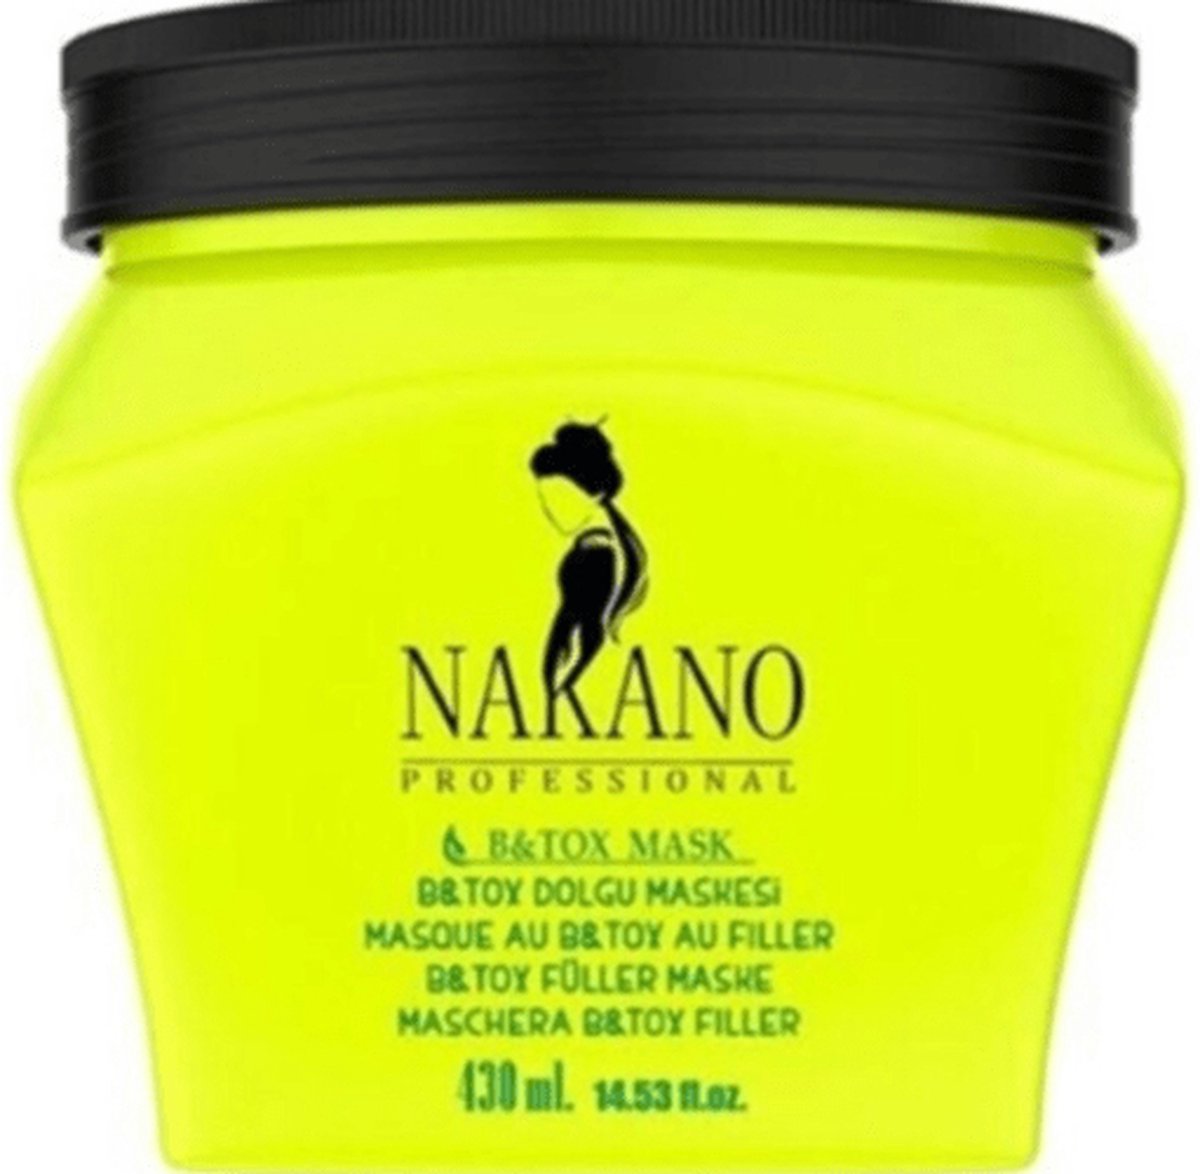 Nakano Hair Mask - B&Tox & Filler Mask - 430ml